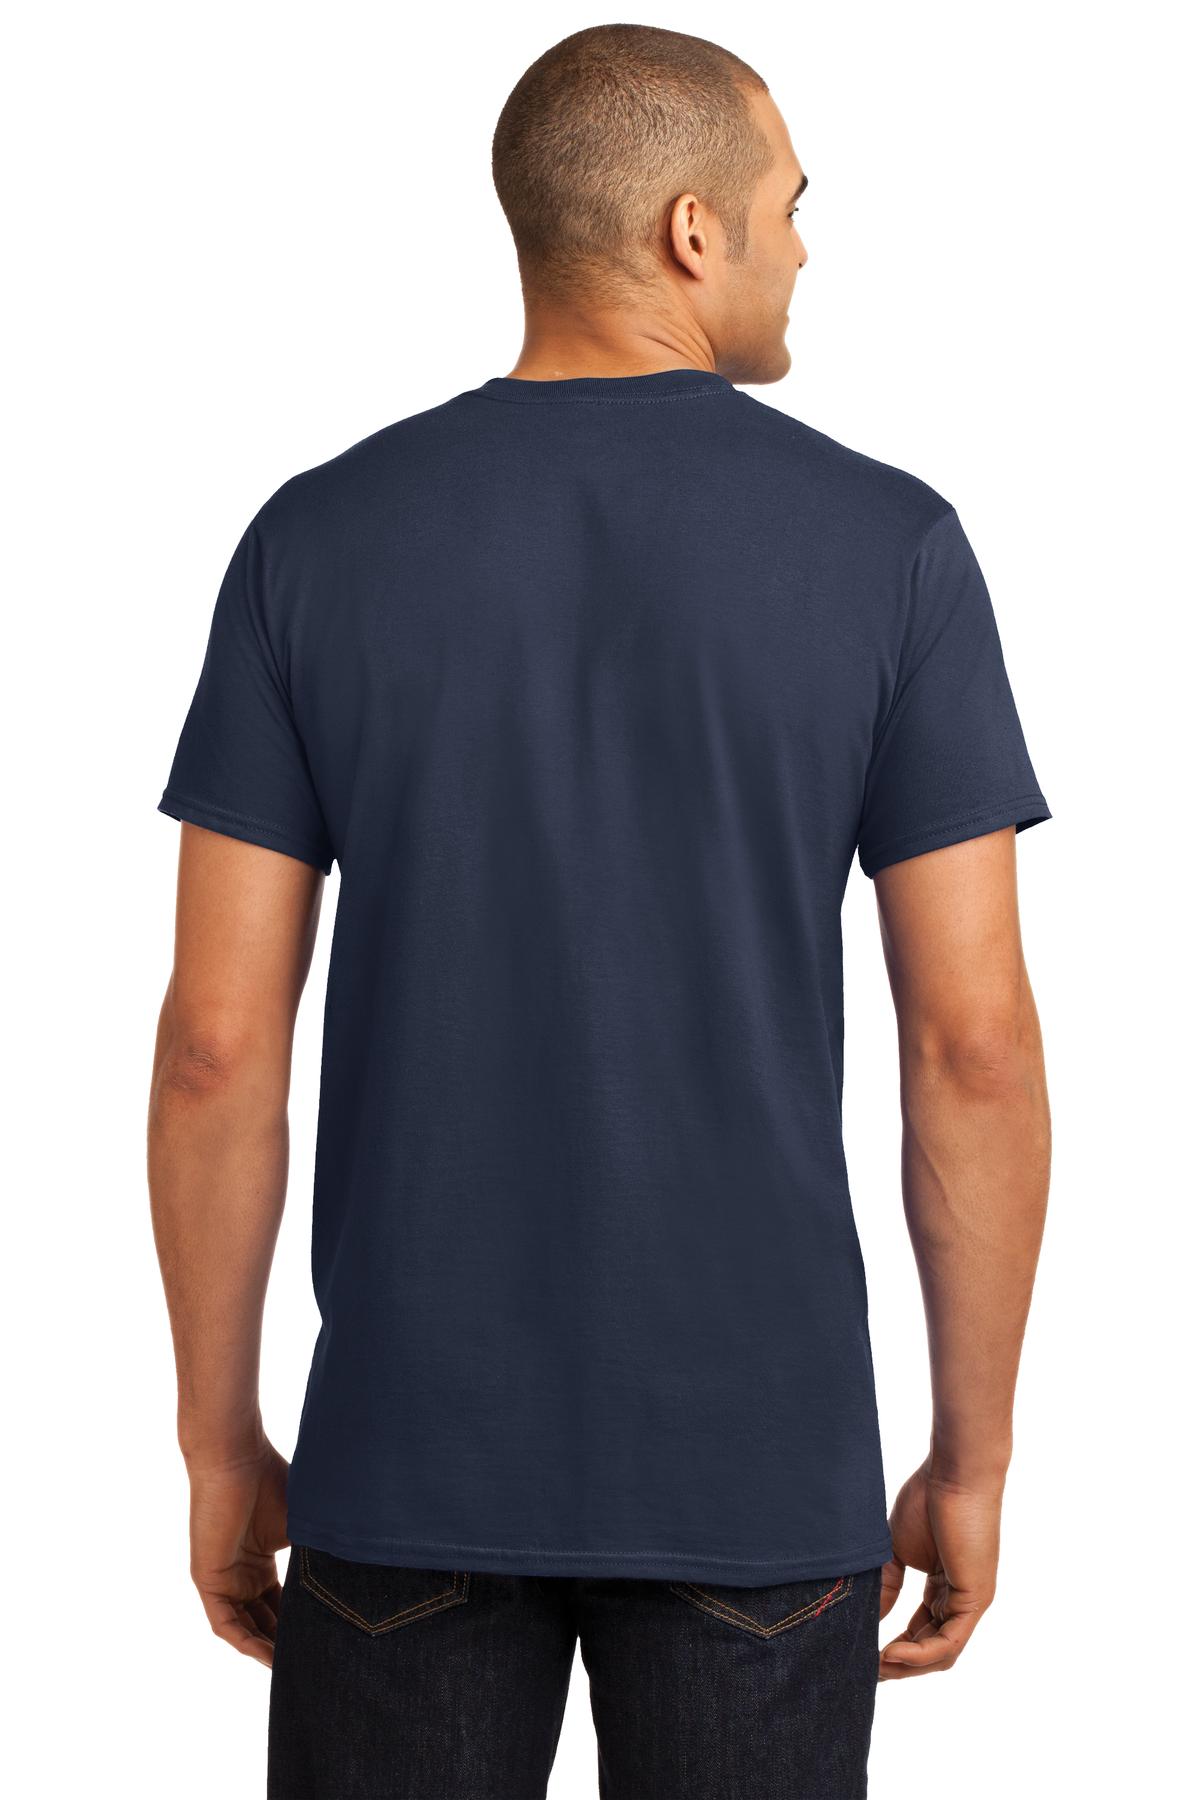 Hanes X-Temp T-Shirt. 4200